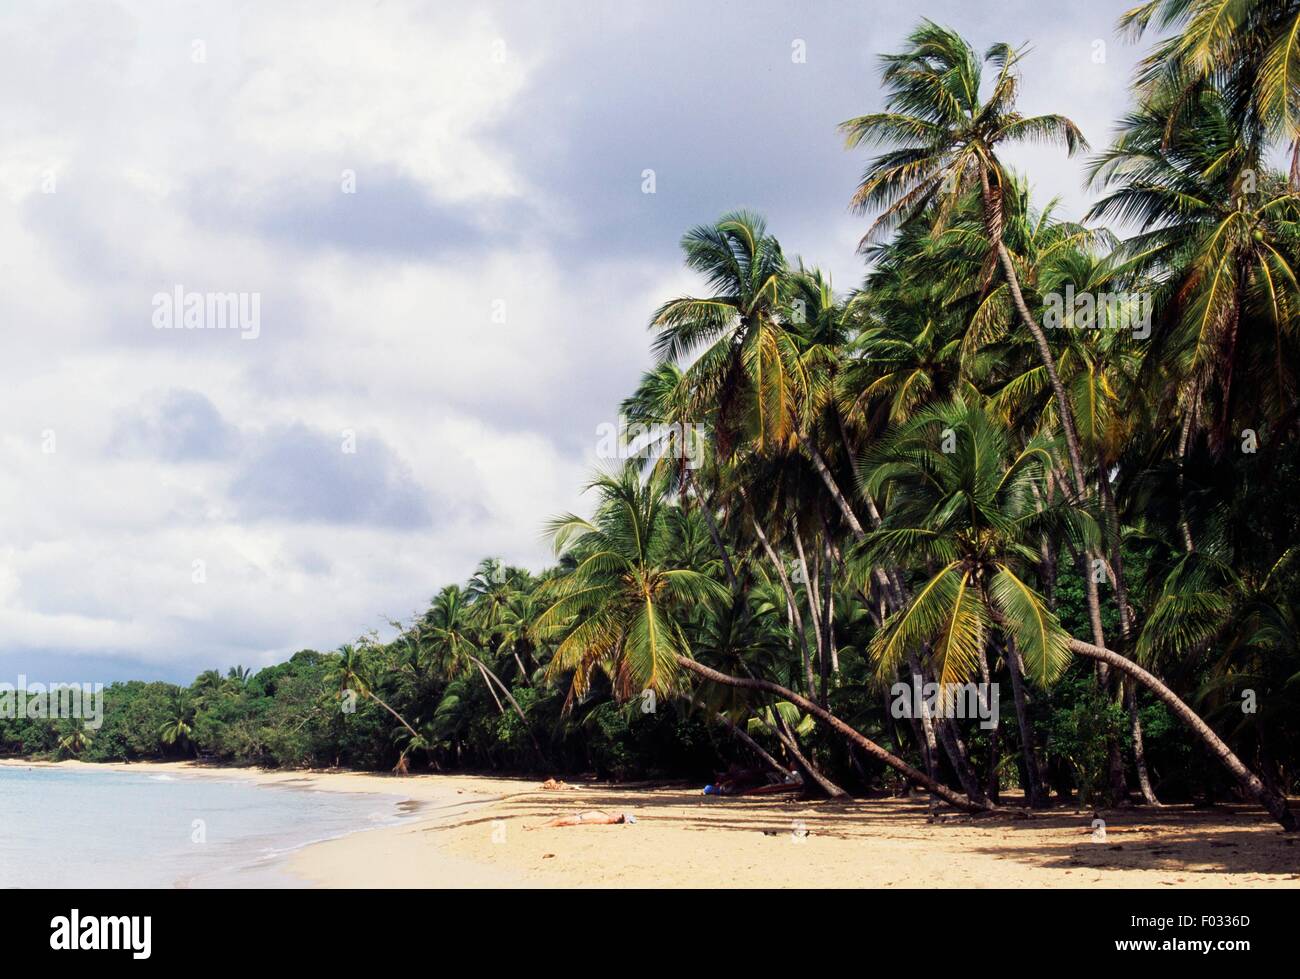 Les salines, la plage avec palmiers, Martinique, région d'outre-mer de la France. Banque D'Images